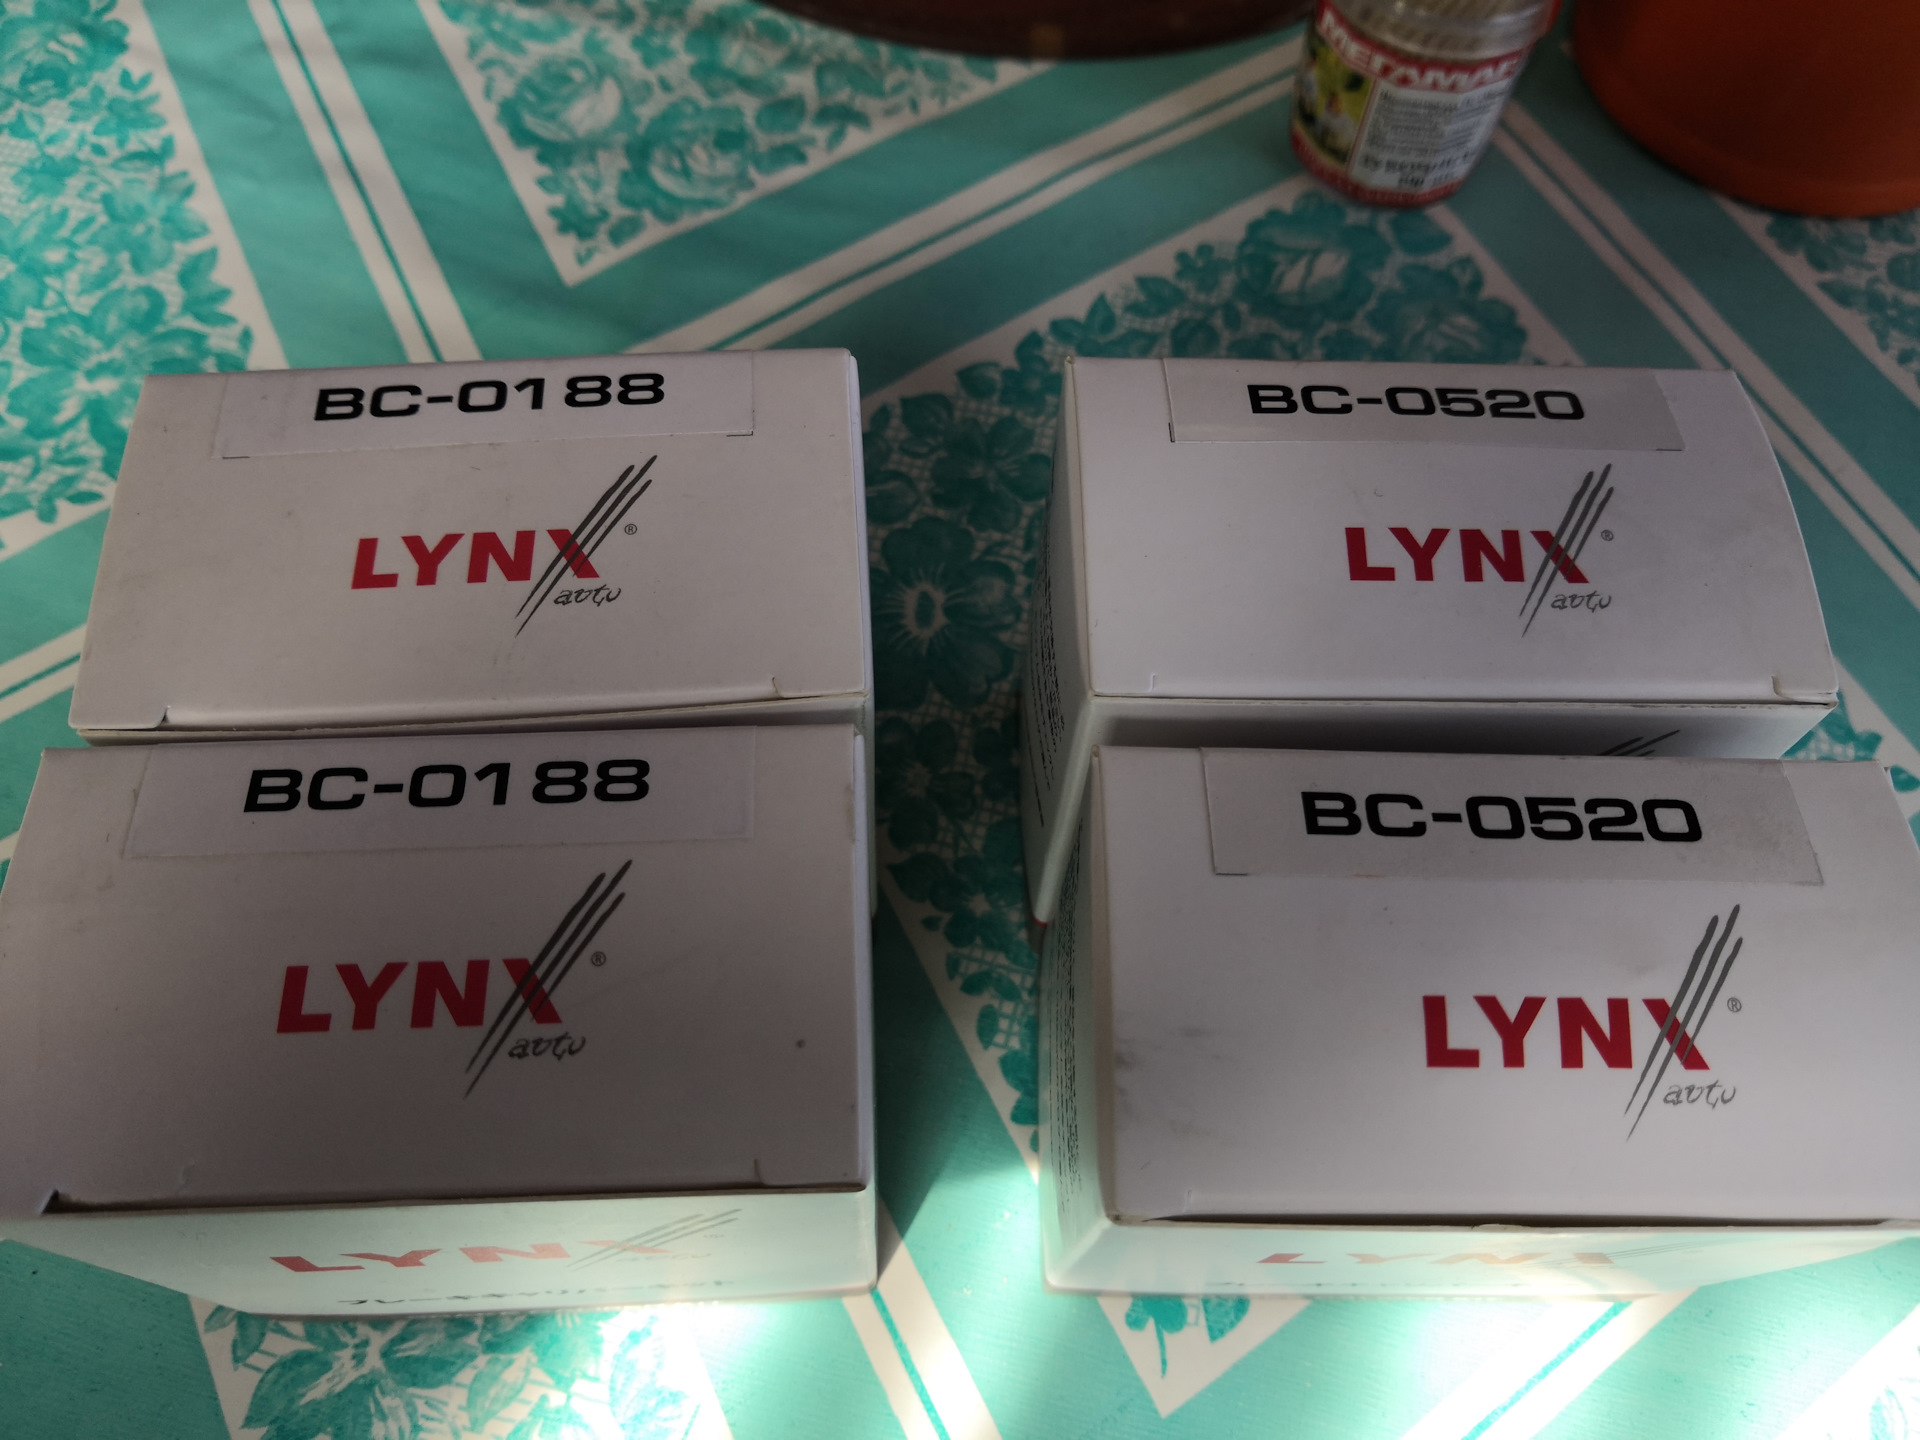 Линкс запчасти. Линкс запчасти Страна производитель. Lynx 520. Lynx ремкомплект отзывы. Производитель lynx отзывы